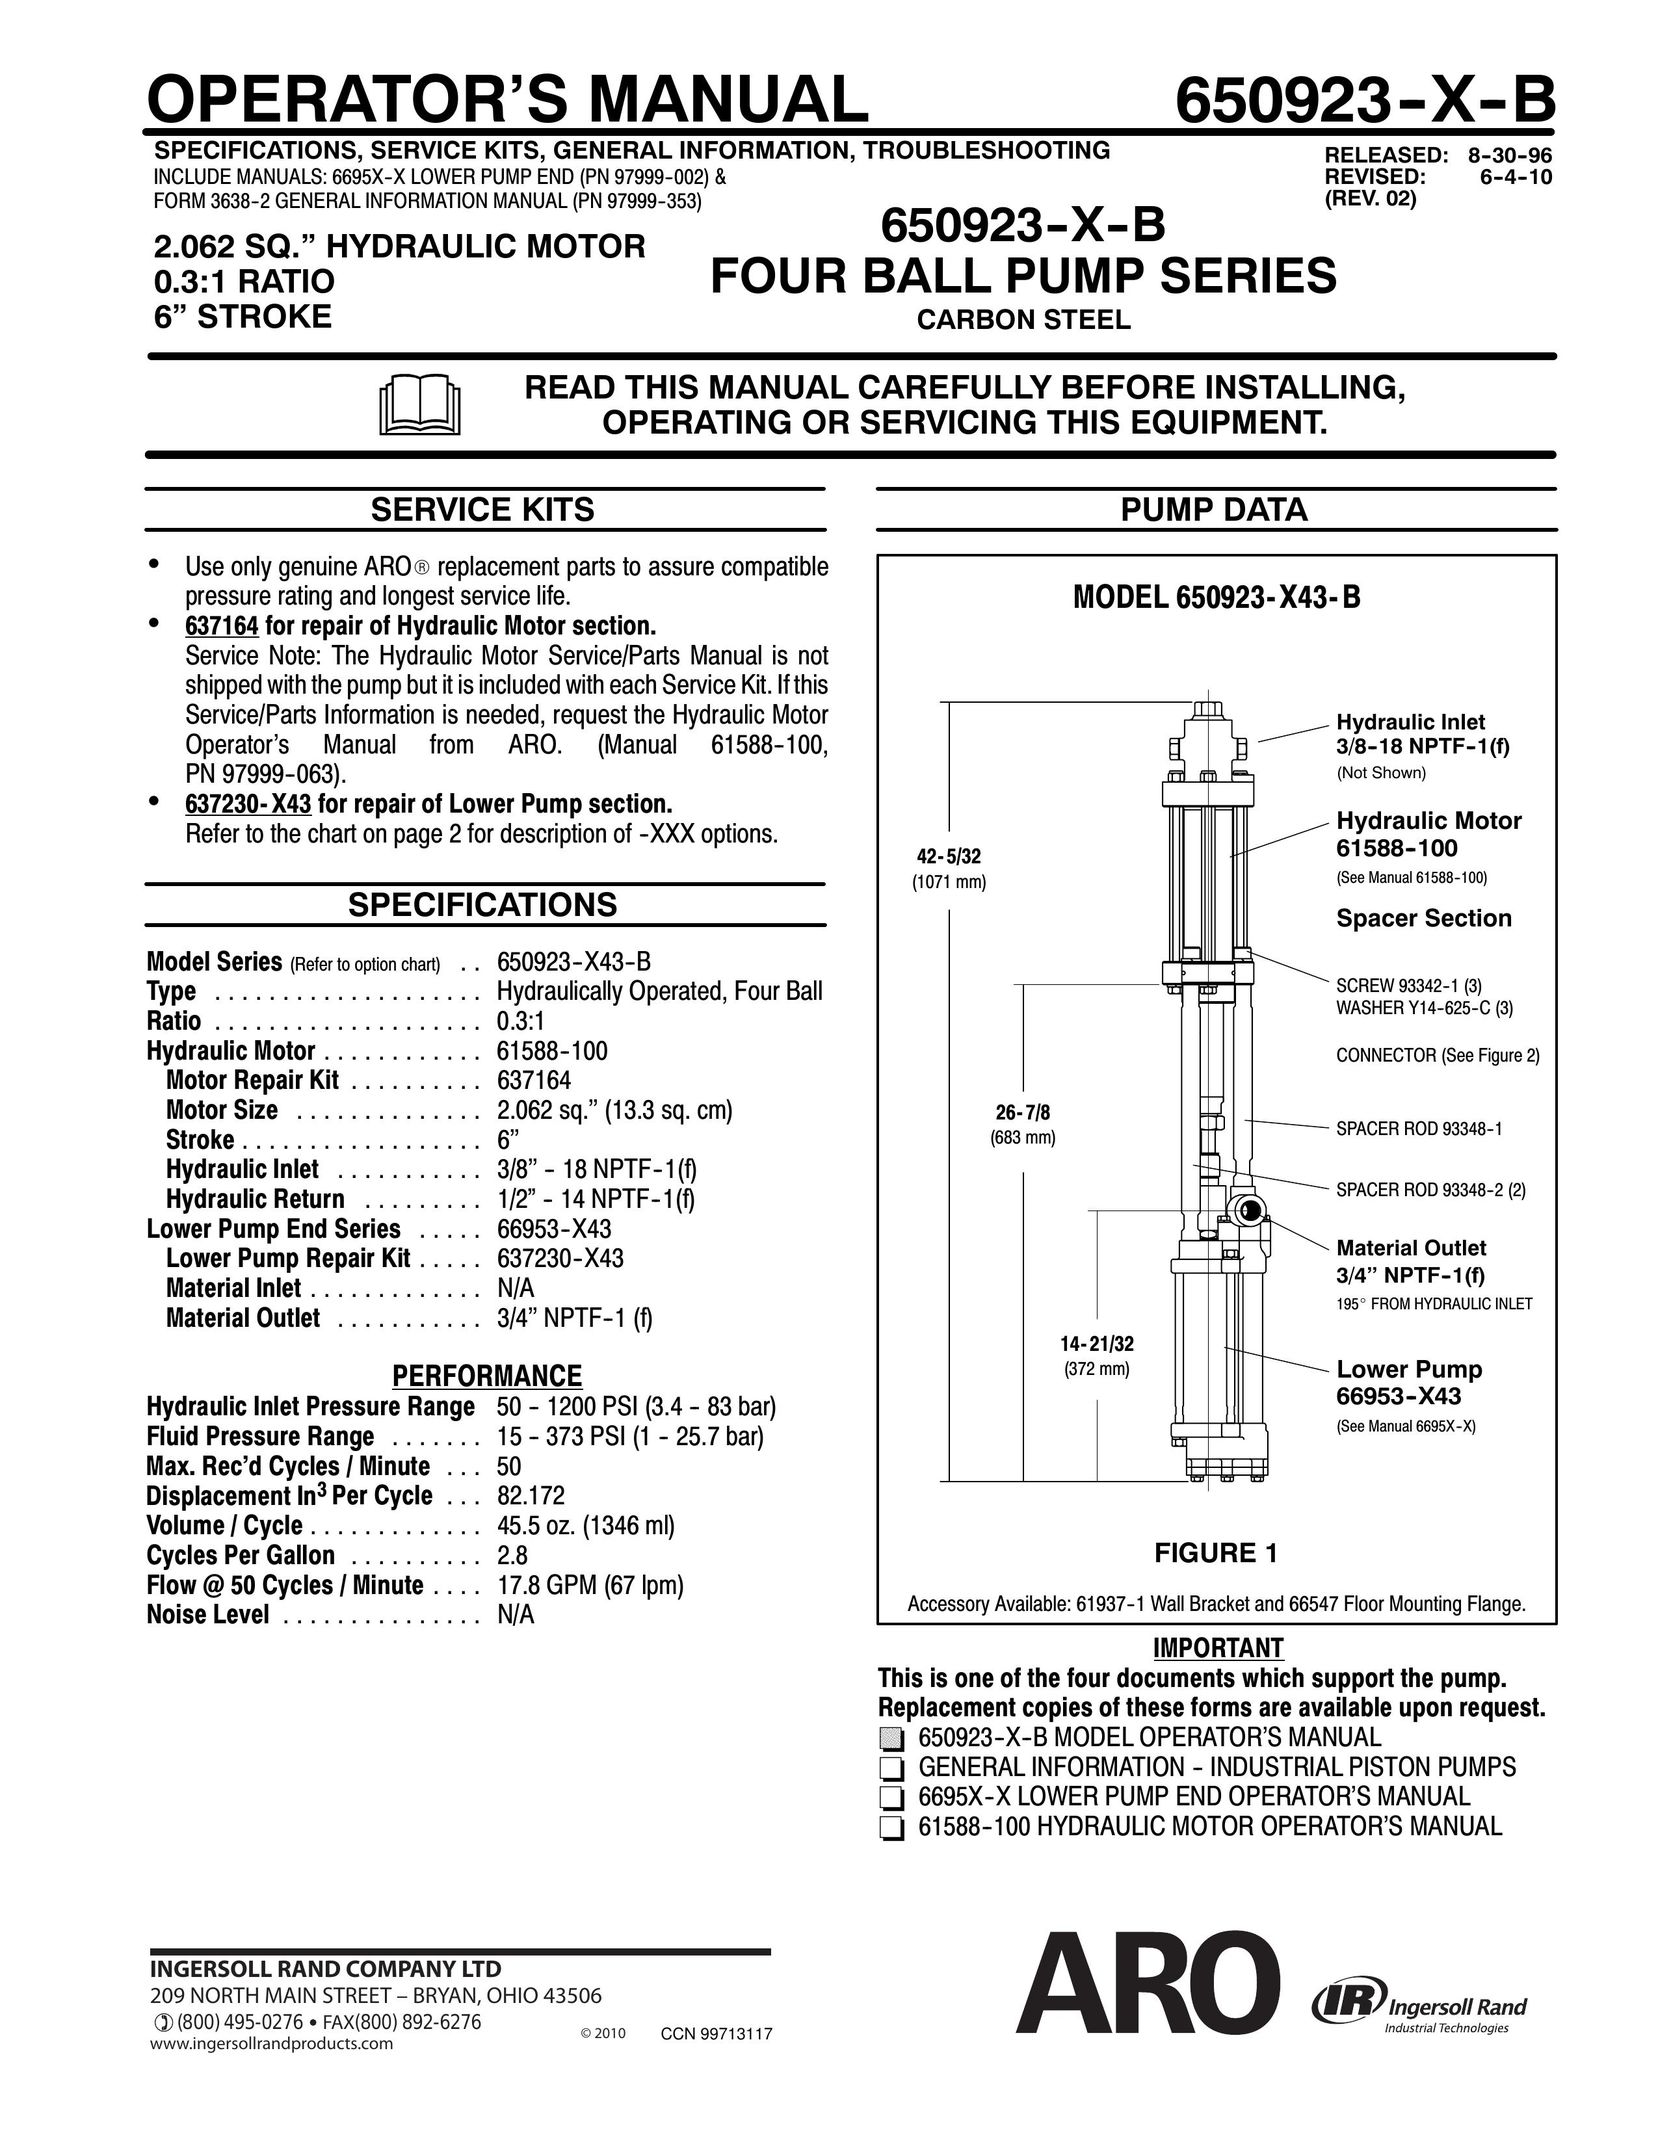 Ingersoll-Rand 650923-X-B Heat Pump User Manual